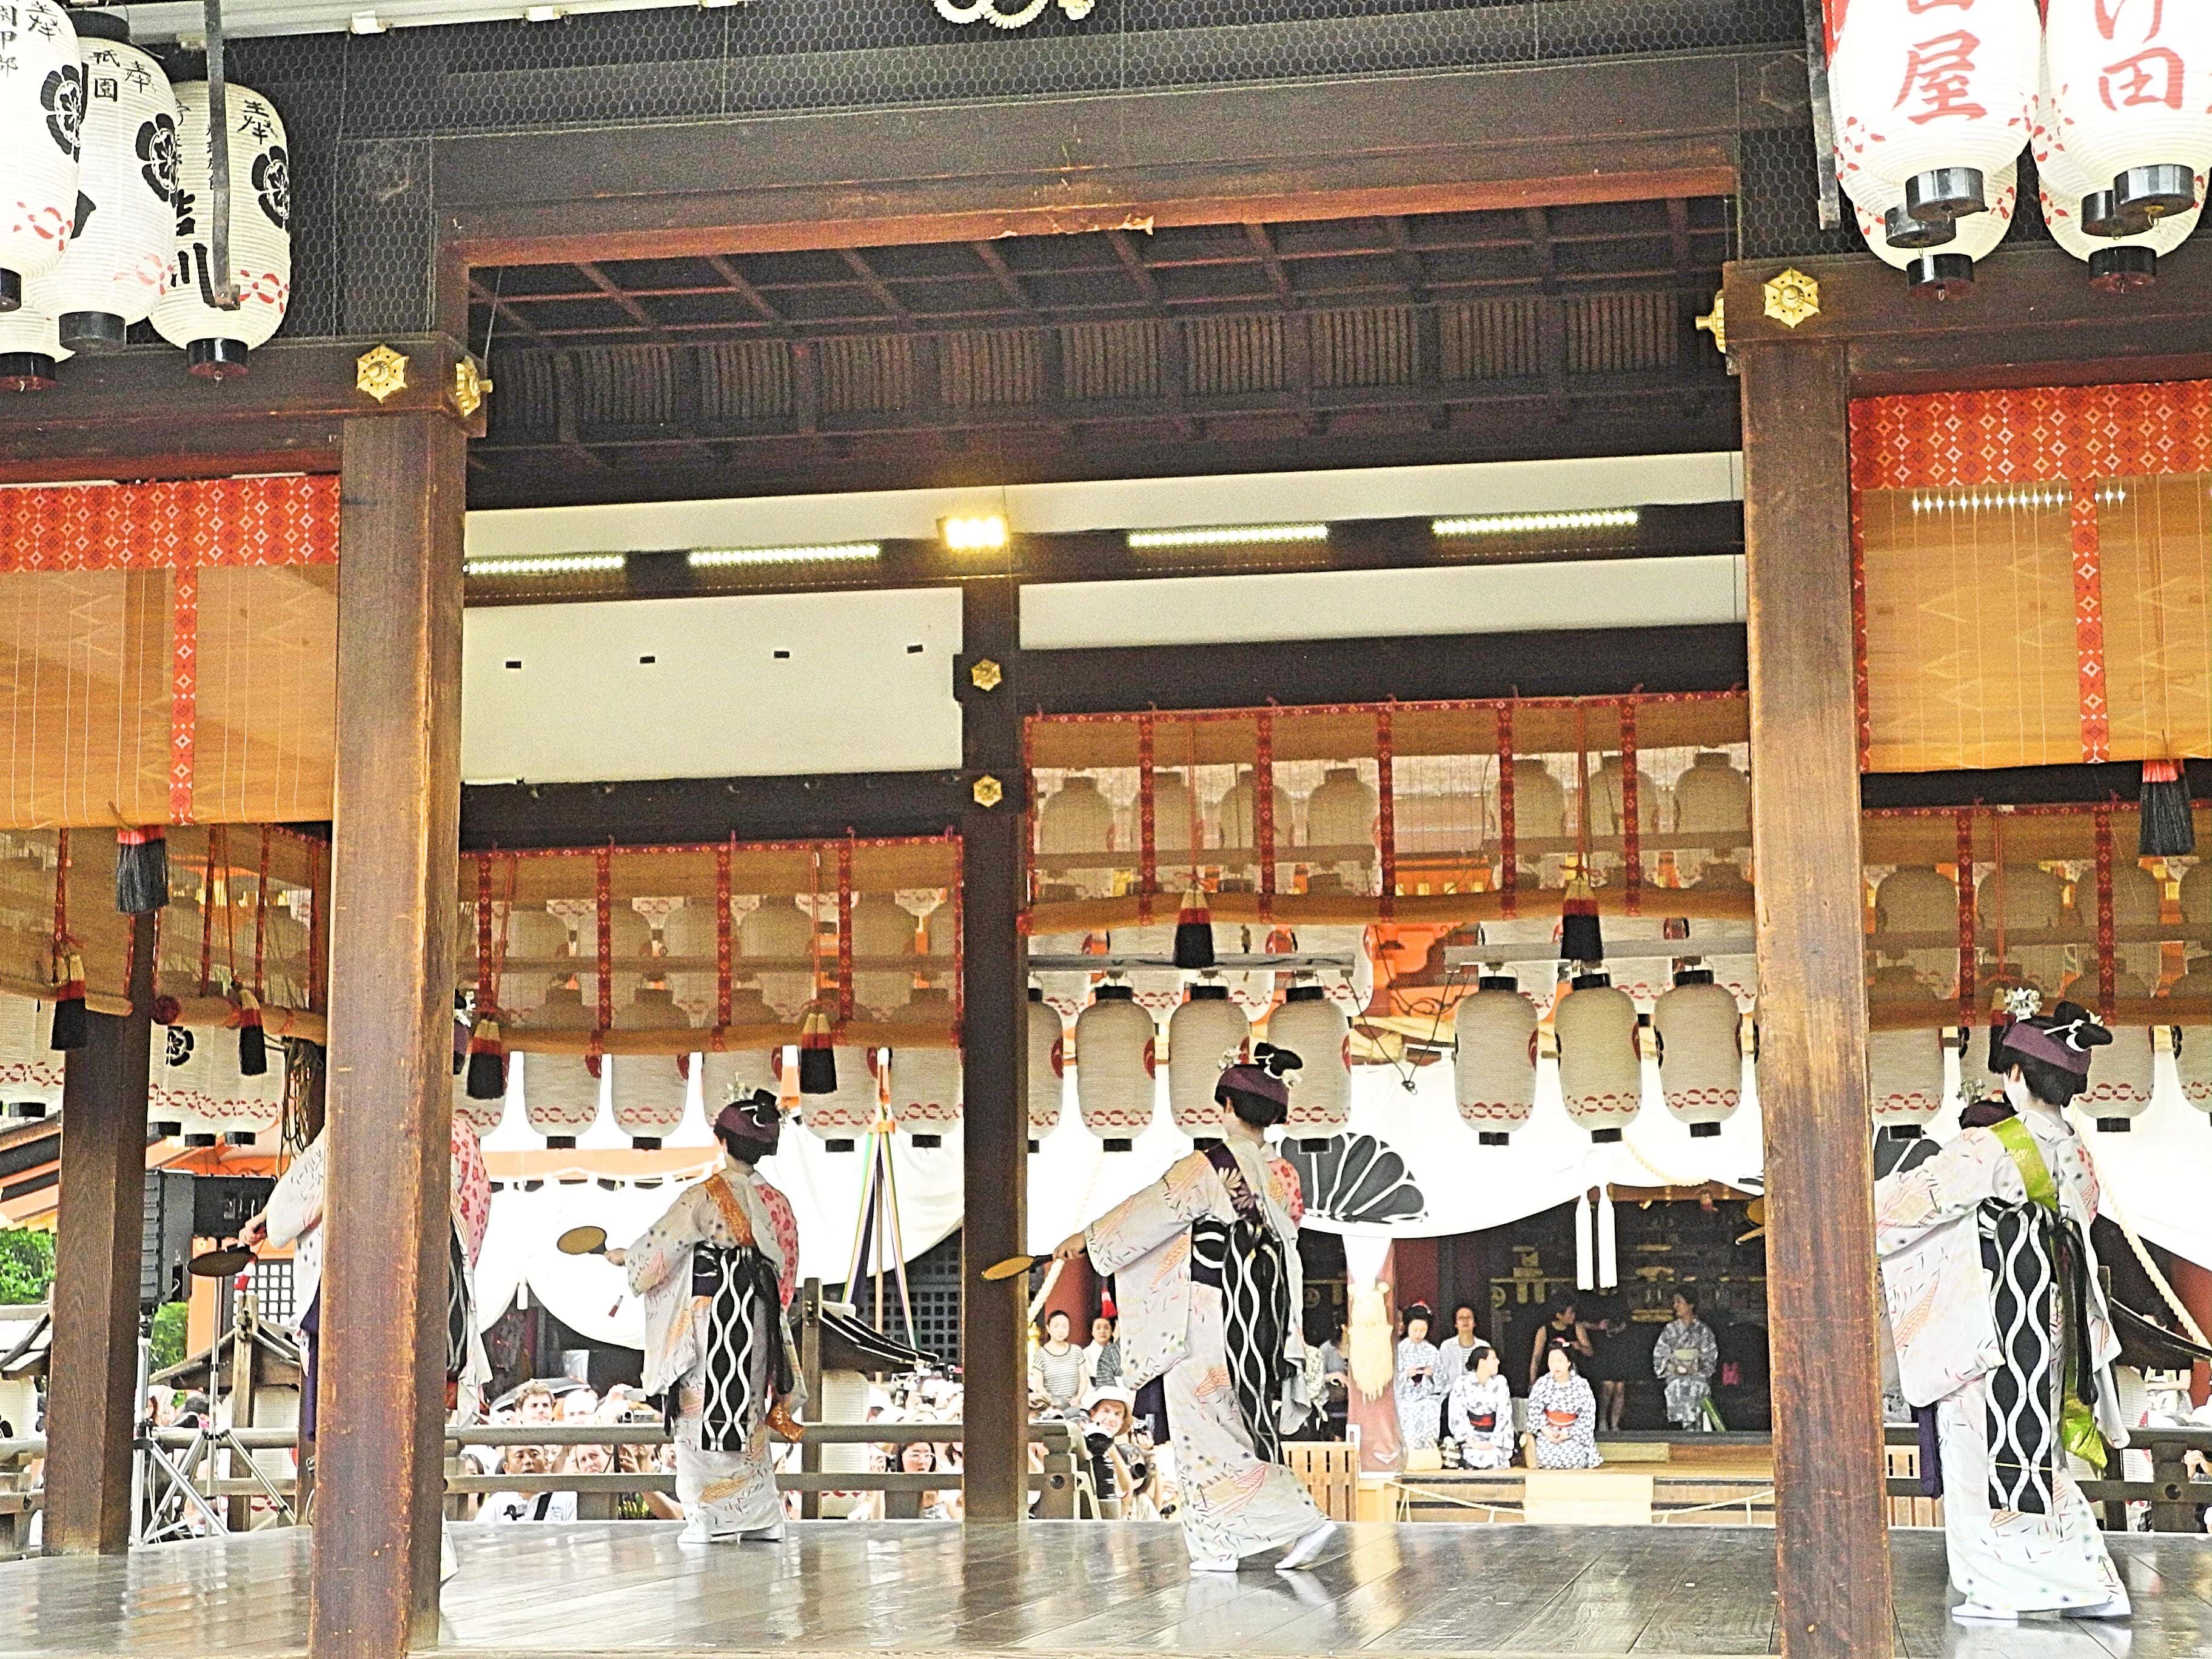 "เทศกาลกิอง (Gion Festival)" เทศกาลใหญ่ของญี่ปุ่น ช่วงเดือน กรกฏาคม พิธีแห่ของญี่ปุ่น